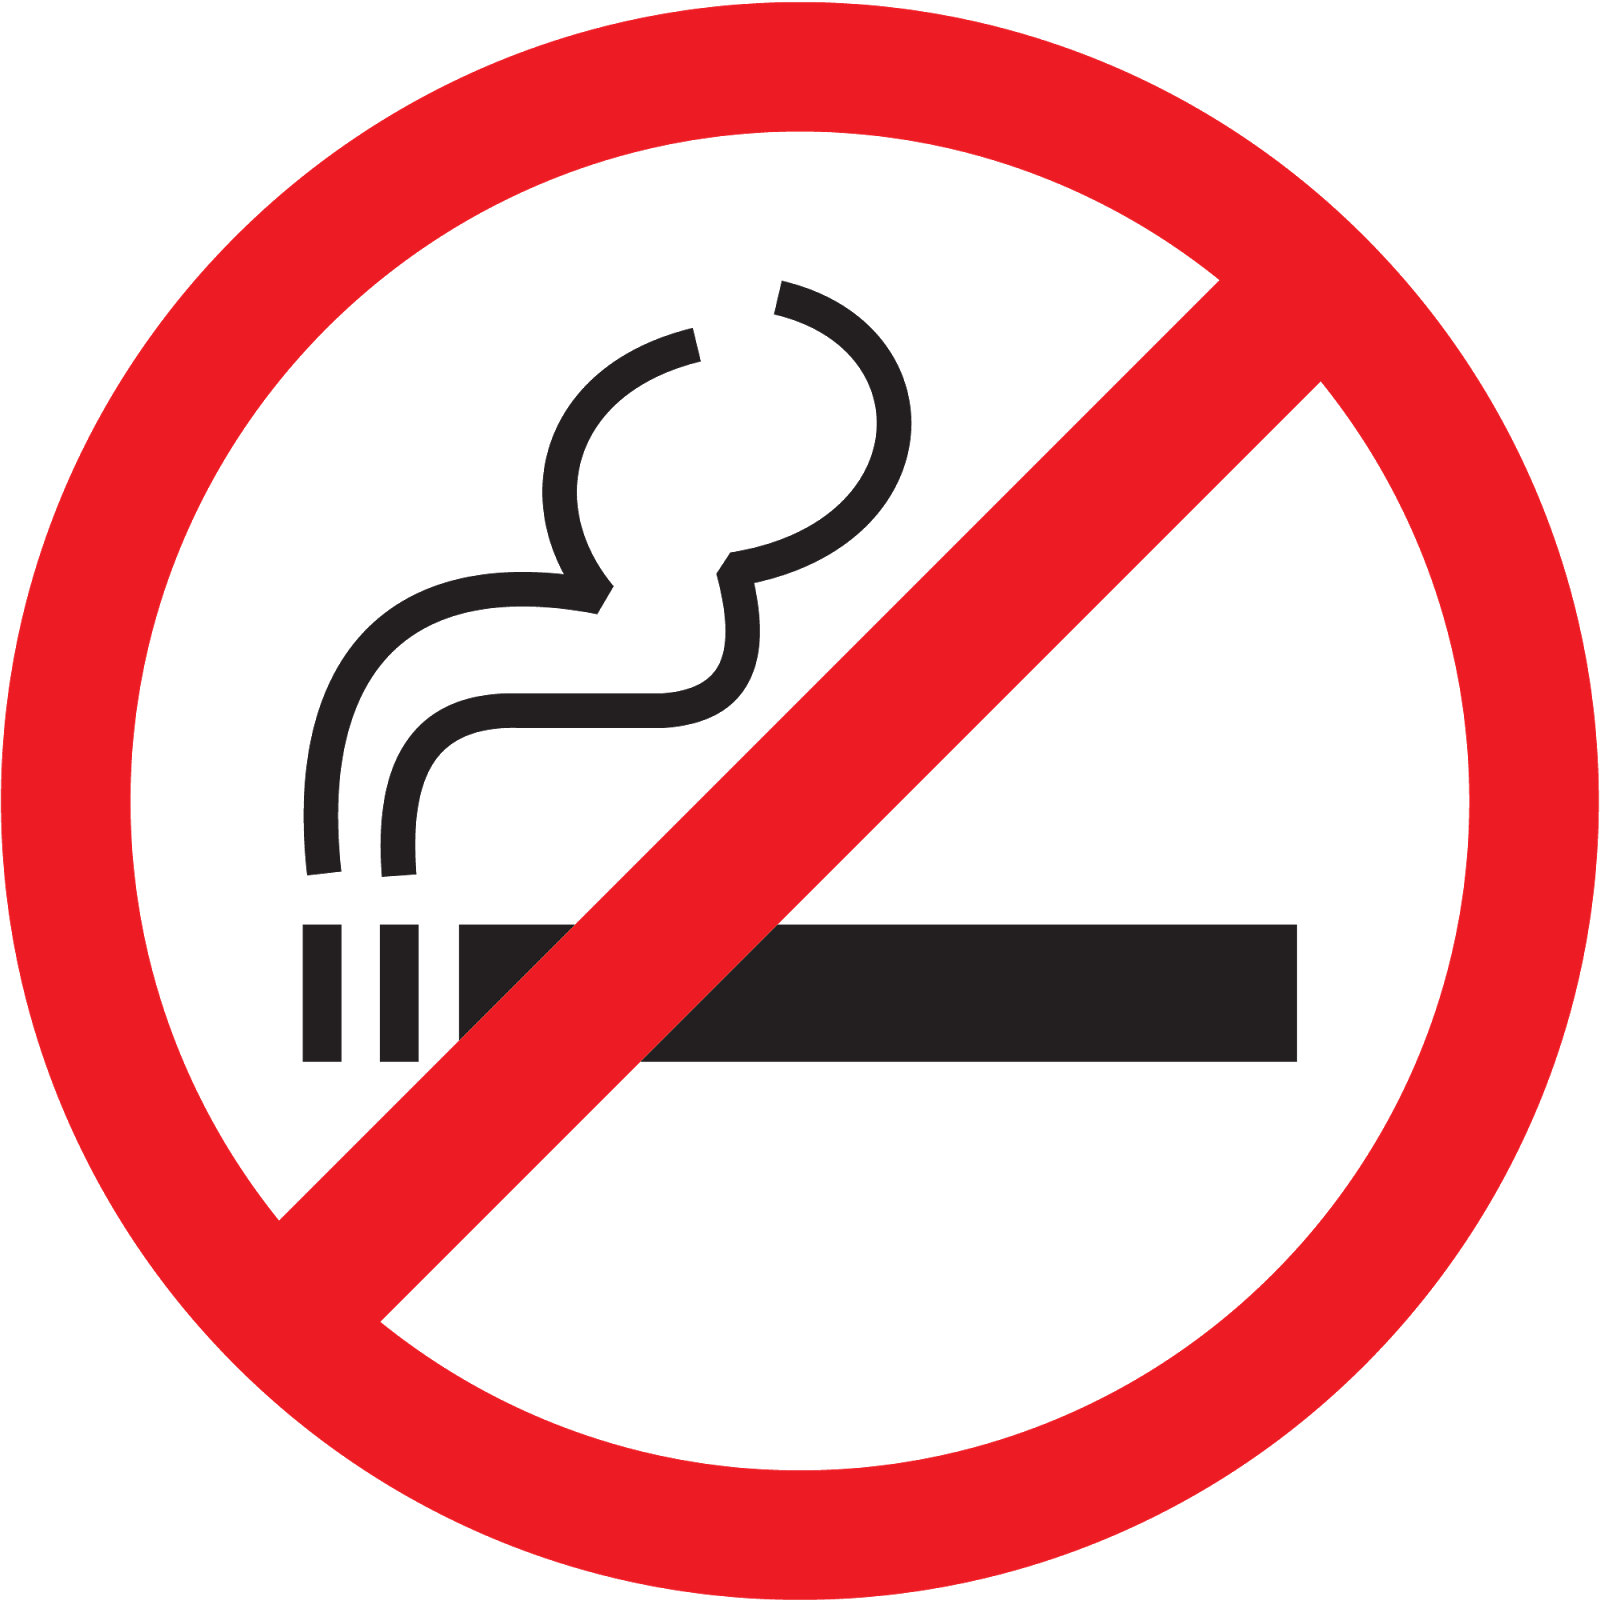 Курящие люди чаще всего болеют COVID-19 в тяжелой форме. Причины